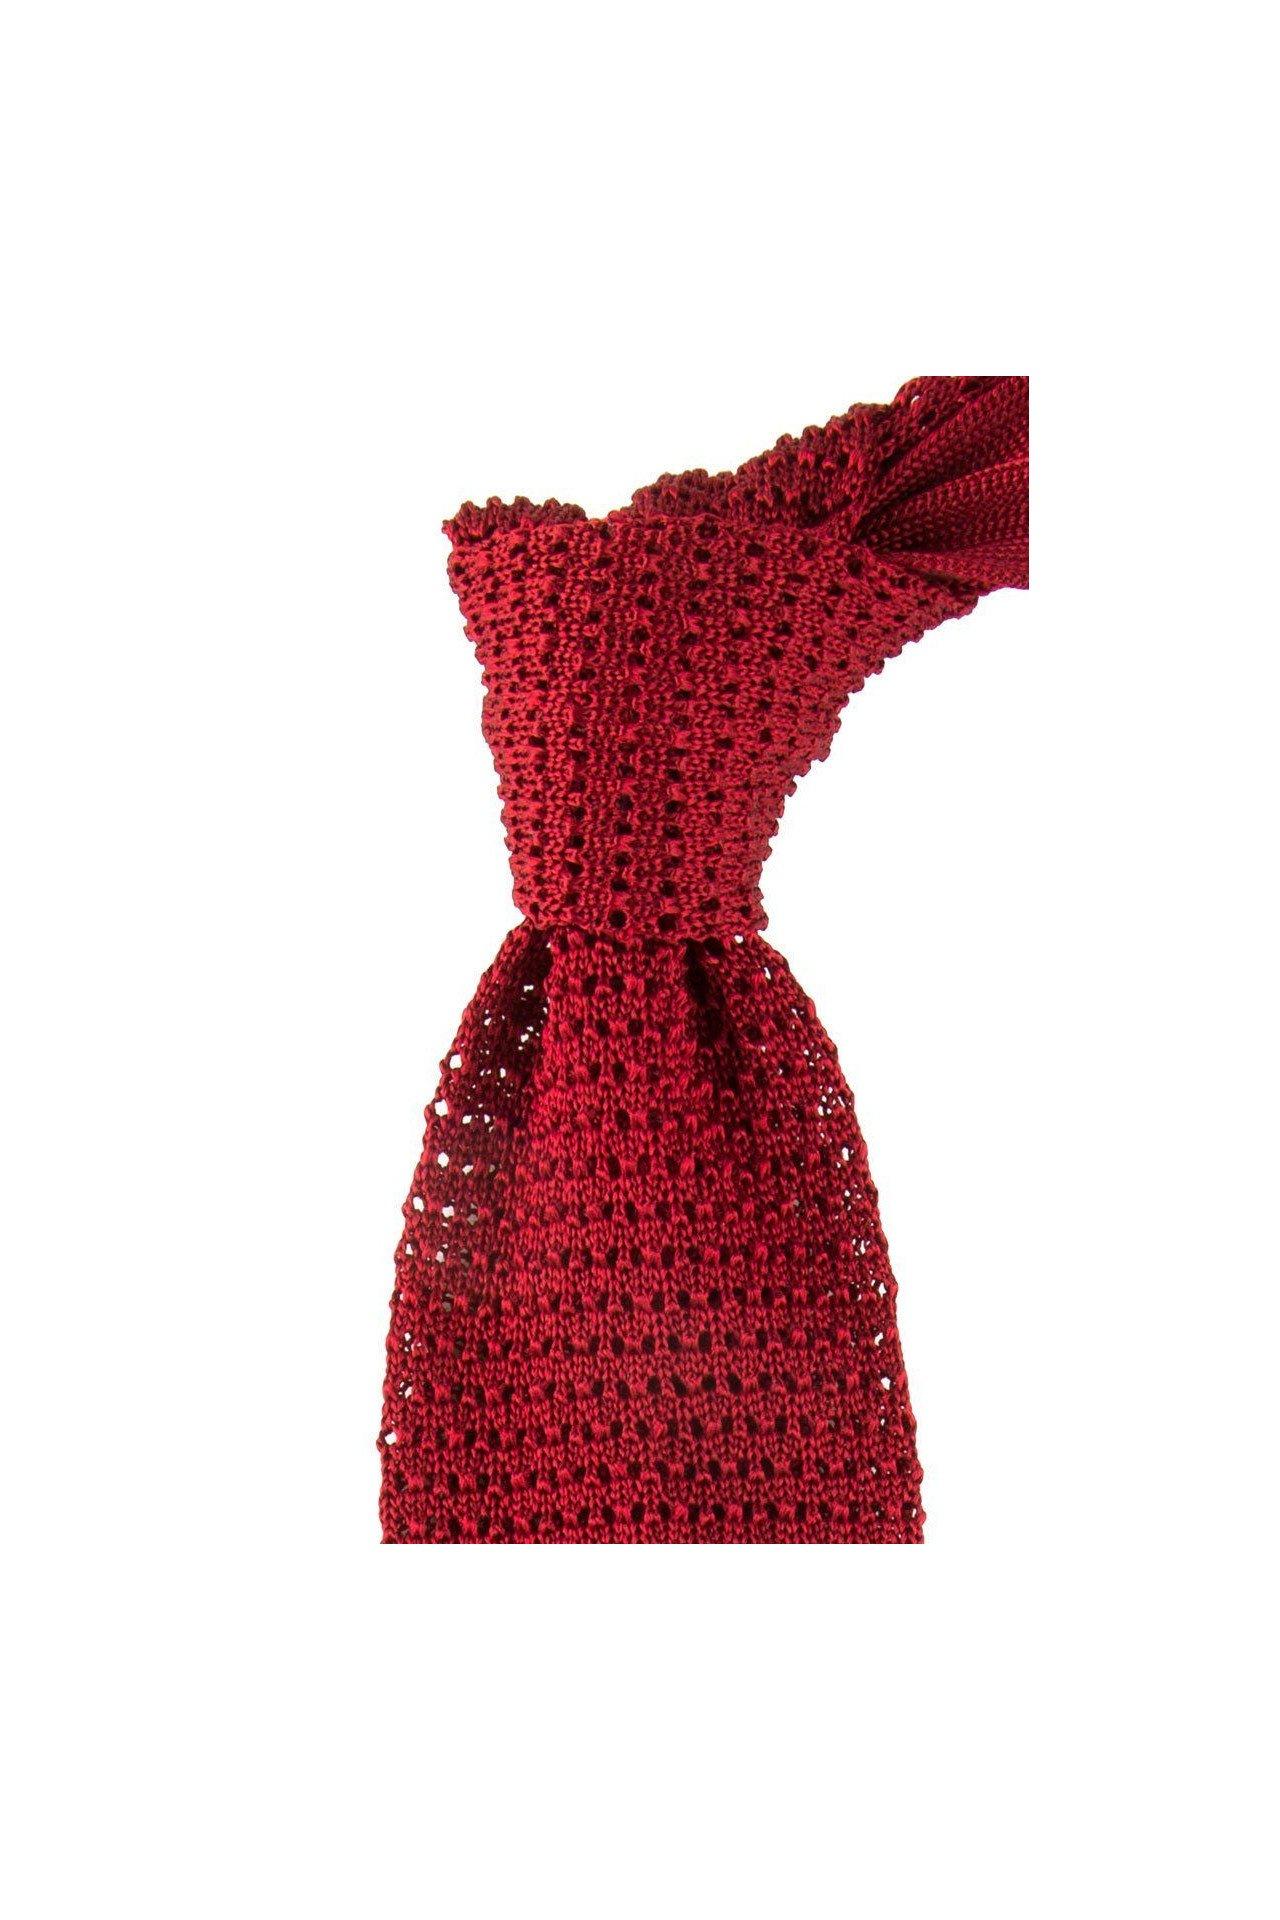 Atelier F&B  Cravate tricot unie en soie 